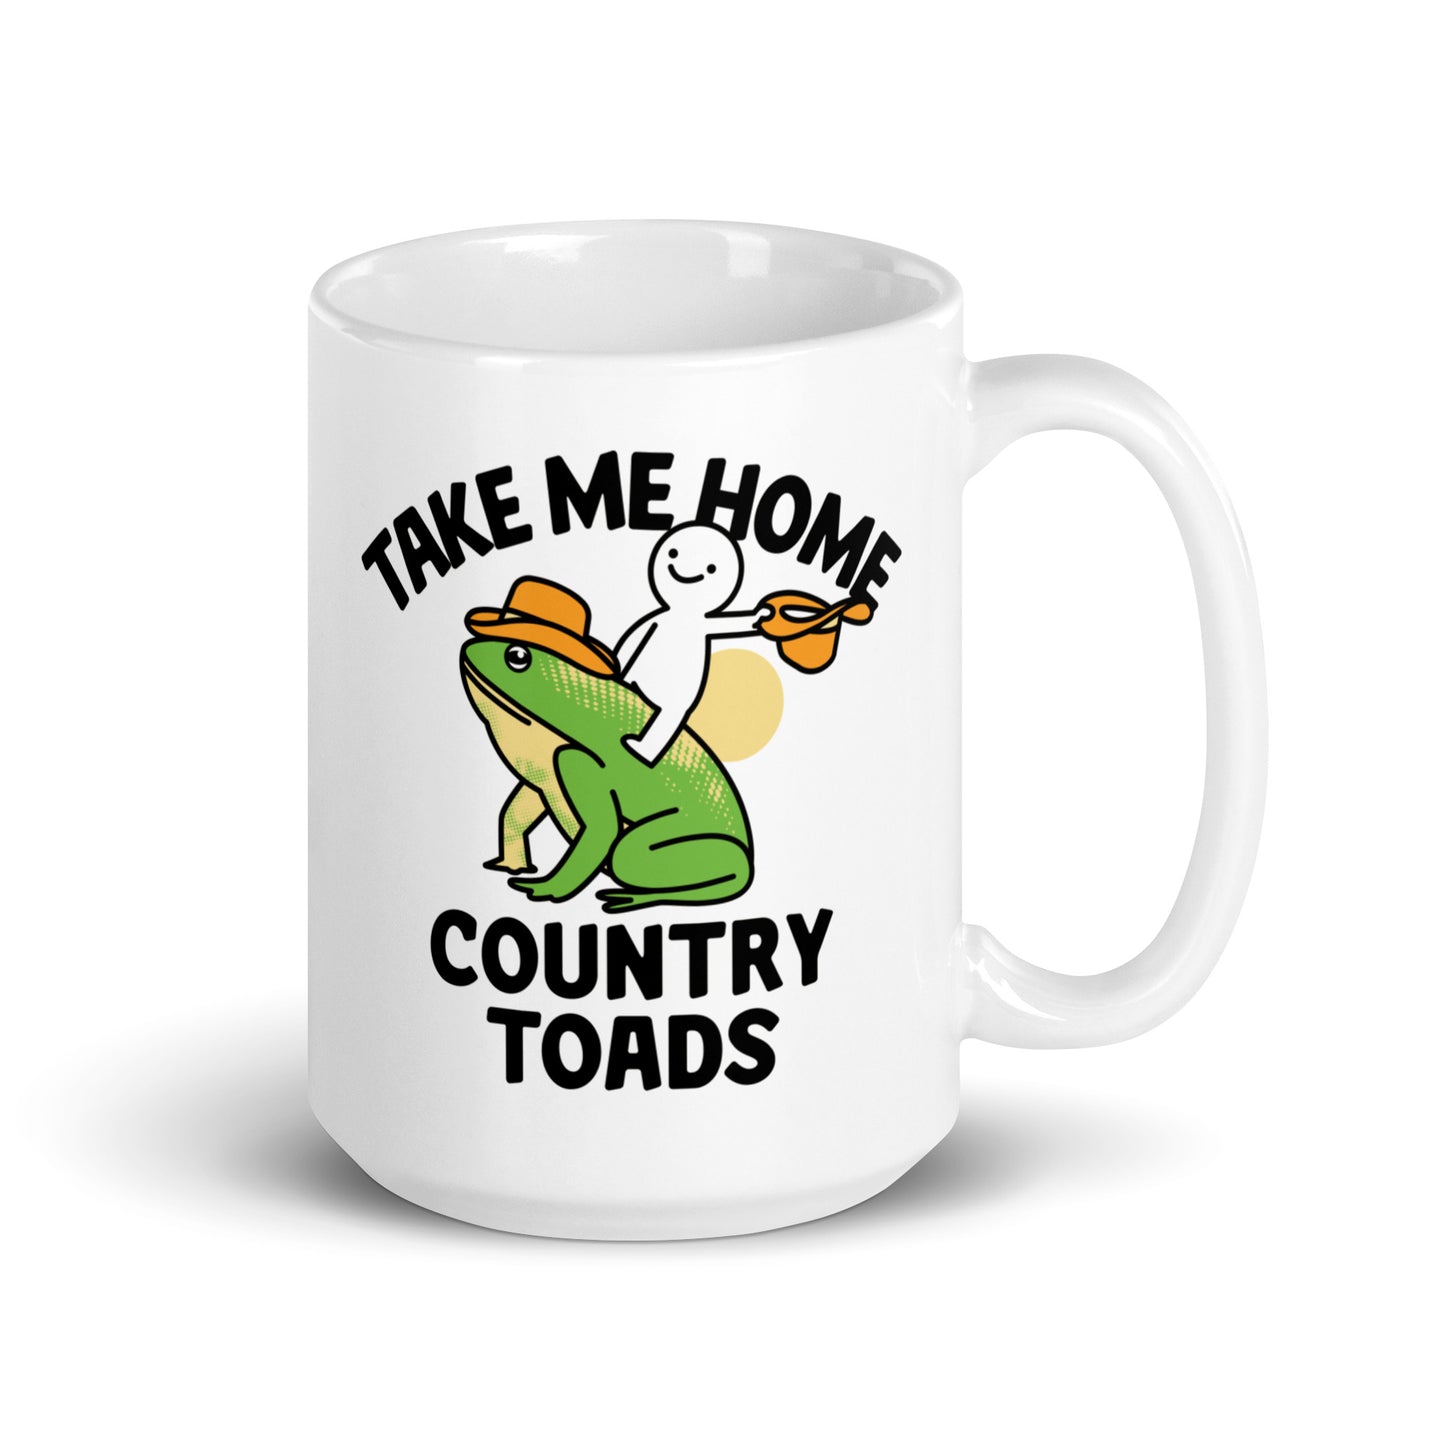 Take Me Home Country Toads Mug